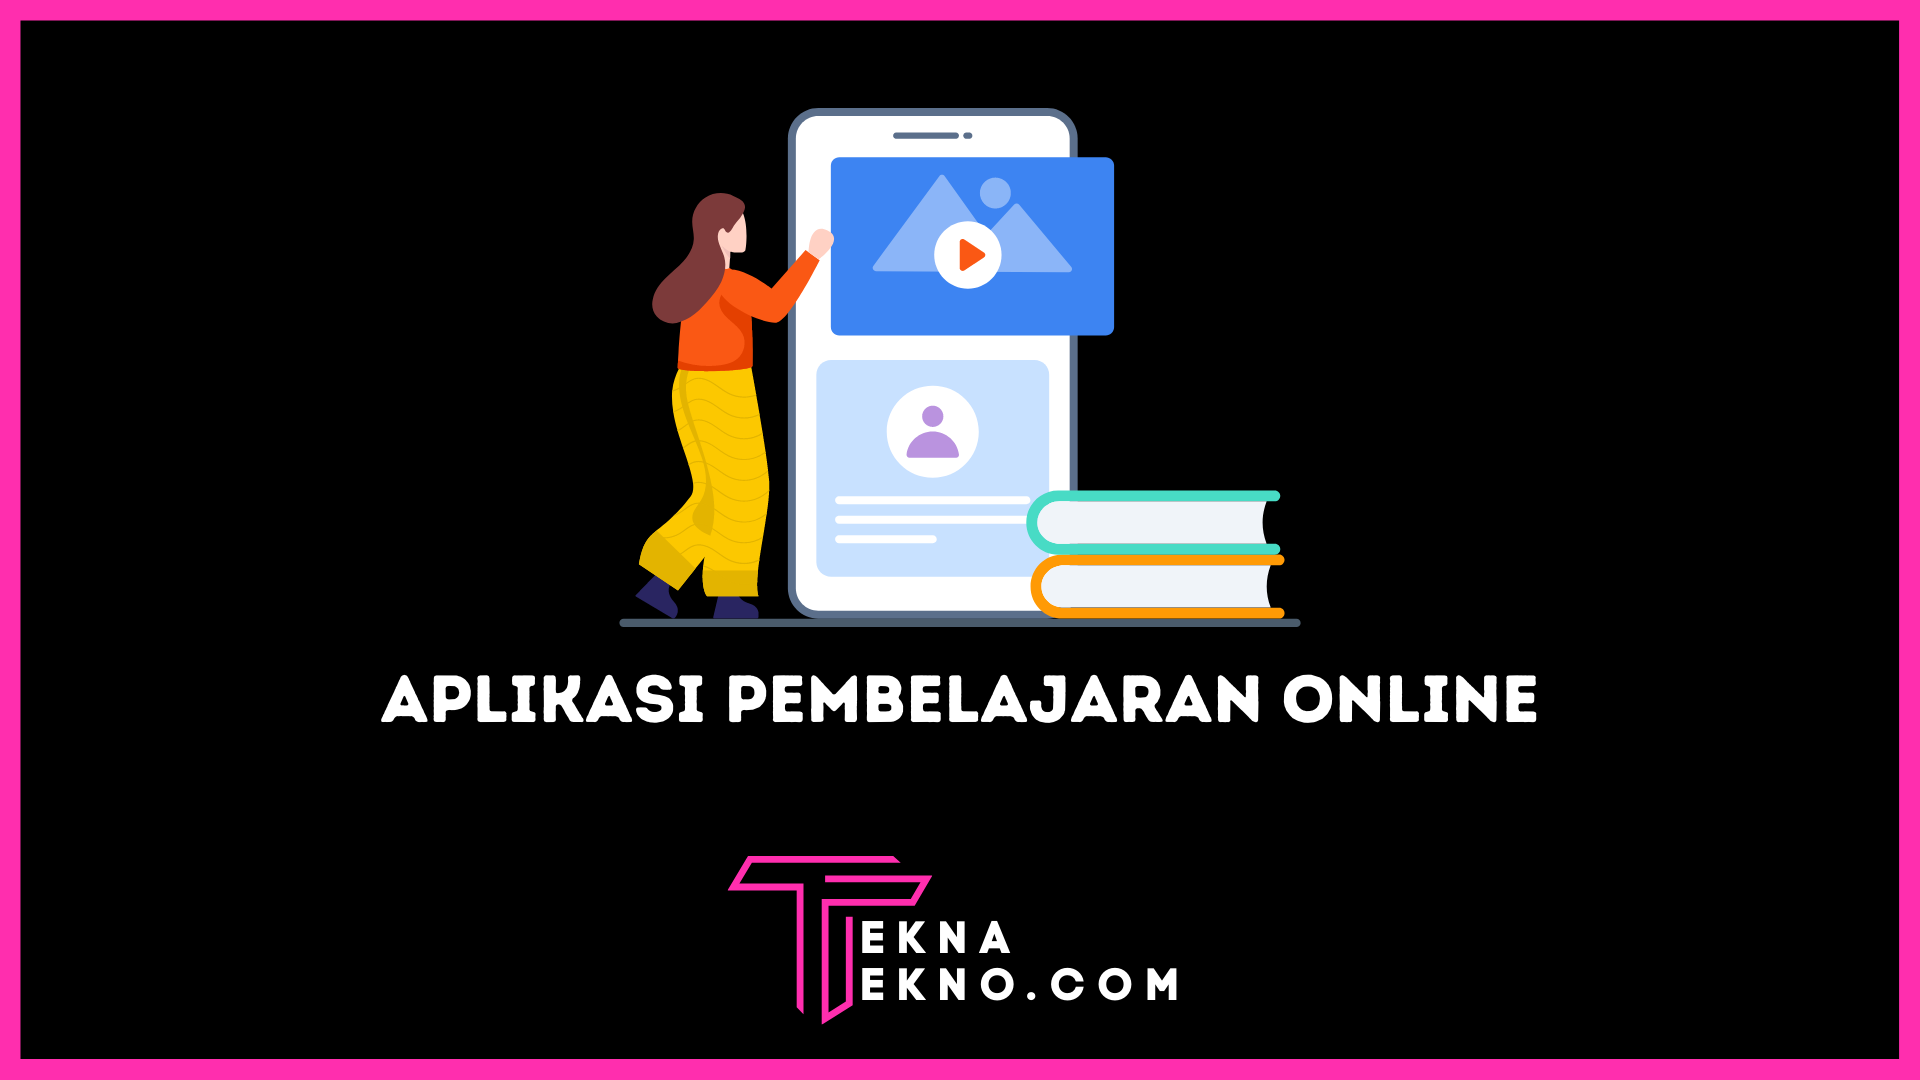 15 Aplikasi Belajar Online Gratis Terbaik di Indonesia untuk Android dan iOS